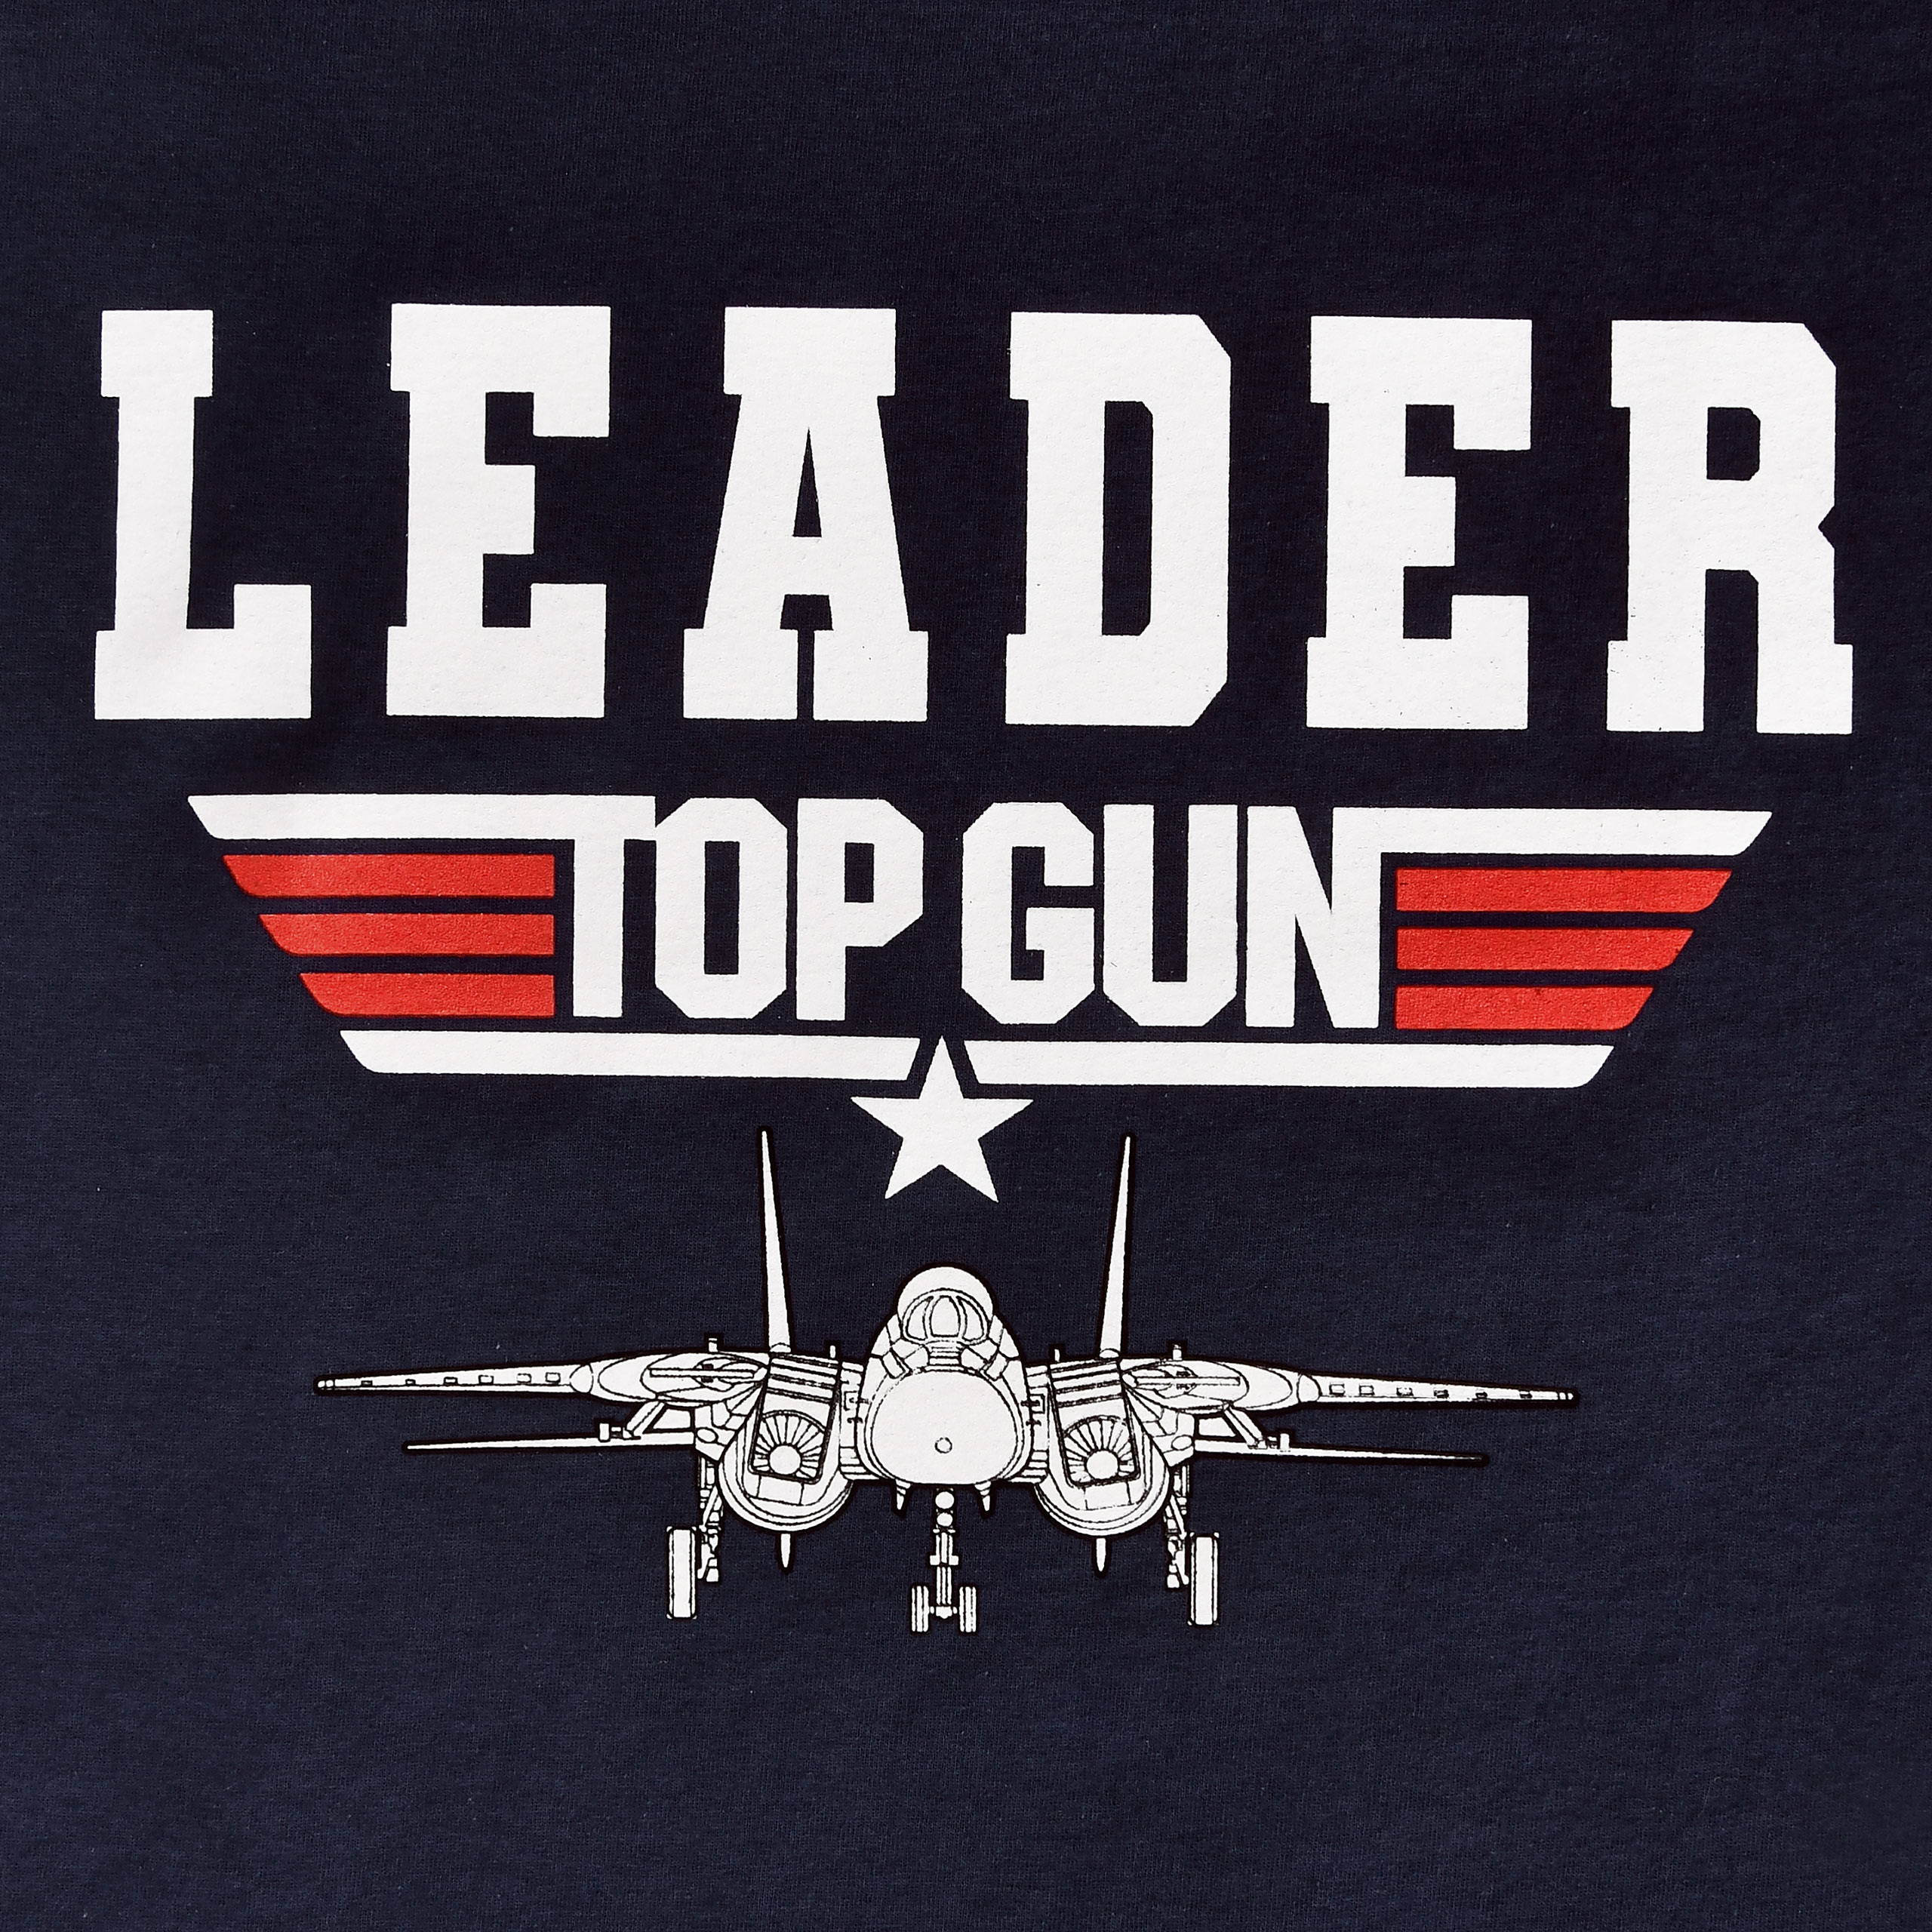 Top Gun - Leader T-Shirt blau